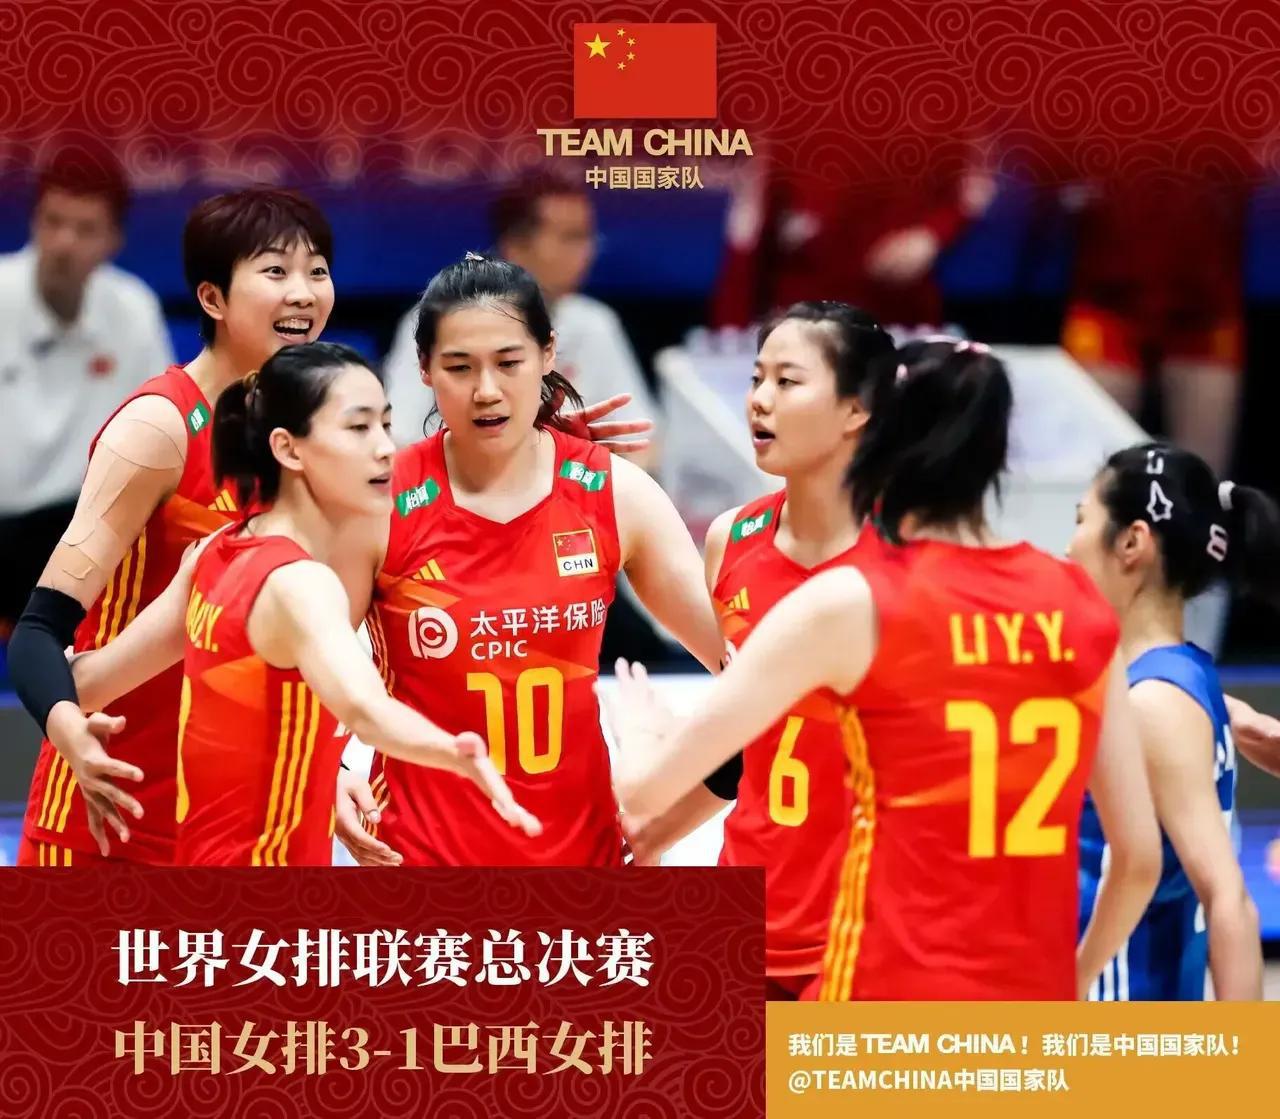 中国女排3-1巴西女排，可喜可贺，给球员打分：

1、李盈莹：96分
她在进攻和